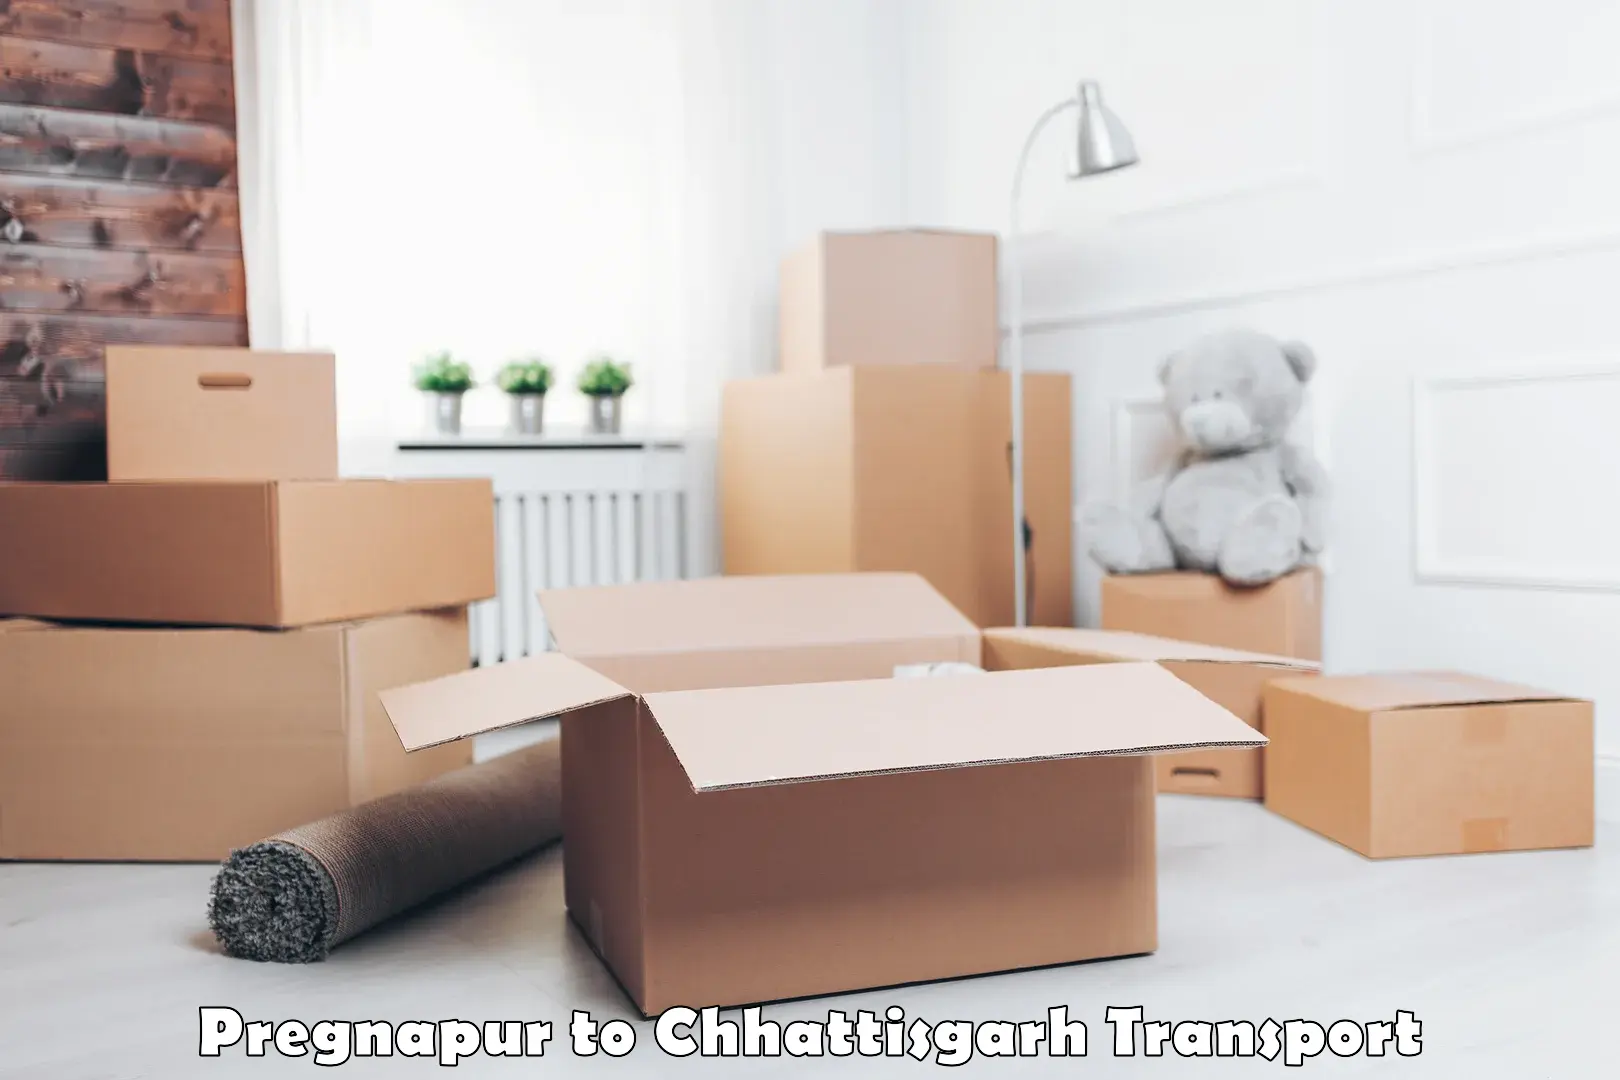 Container transport service Pregnapur to Raigarh Chhattisgarh